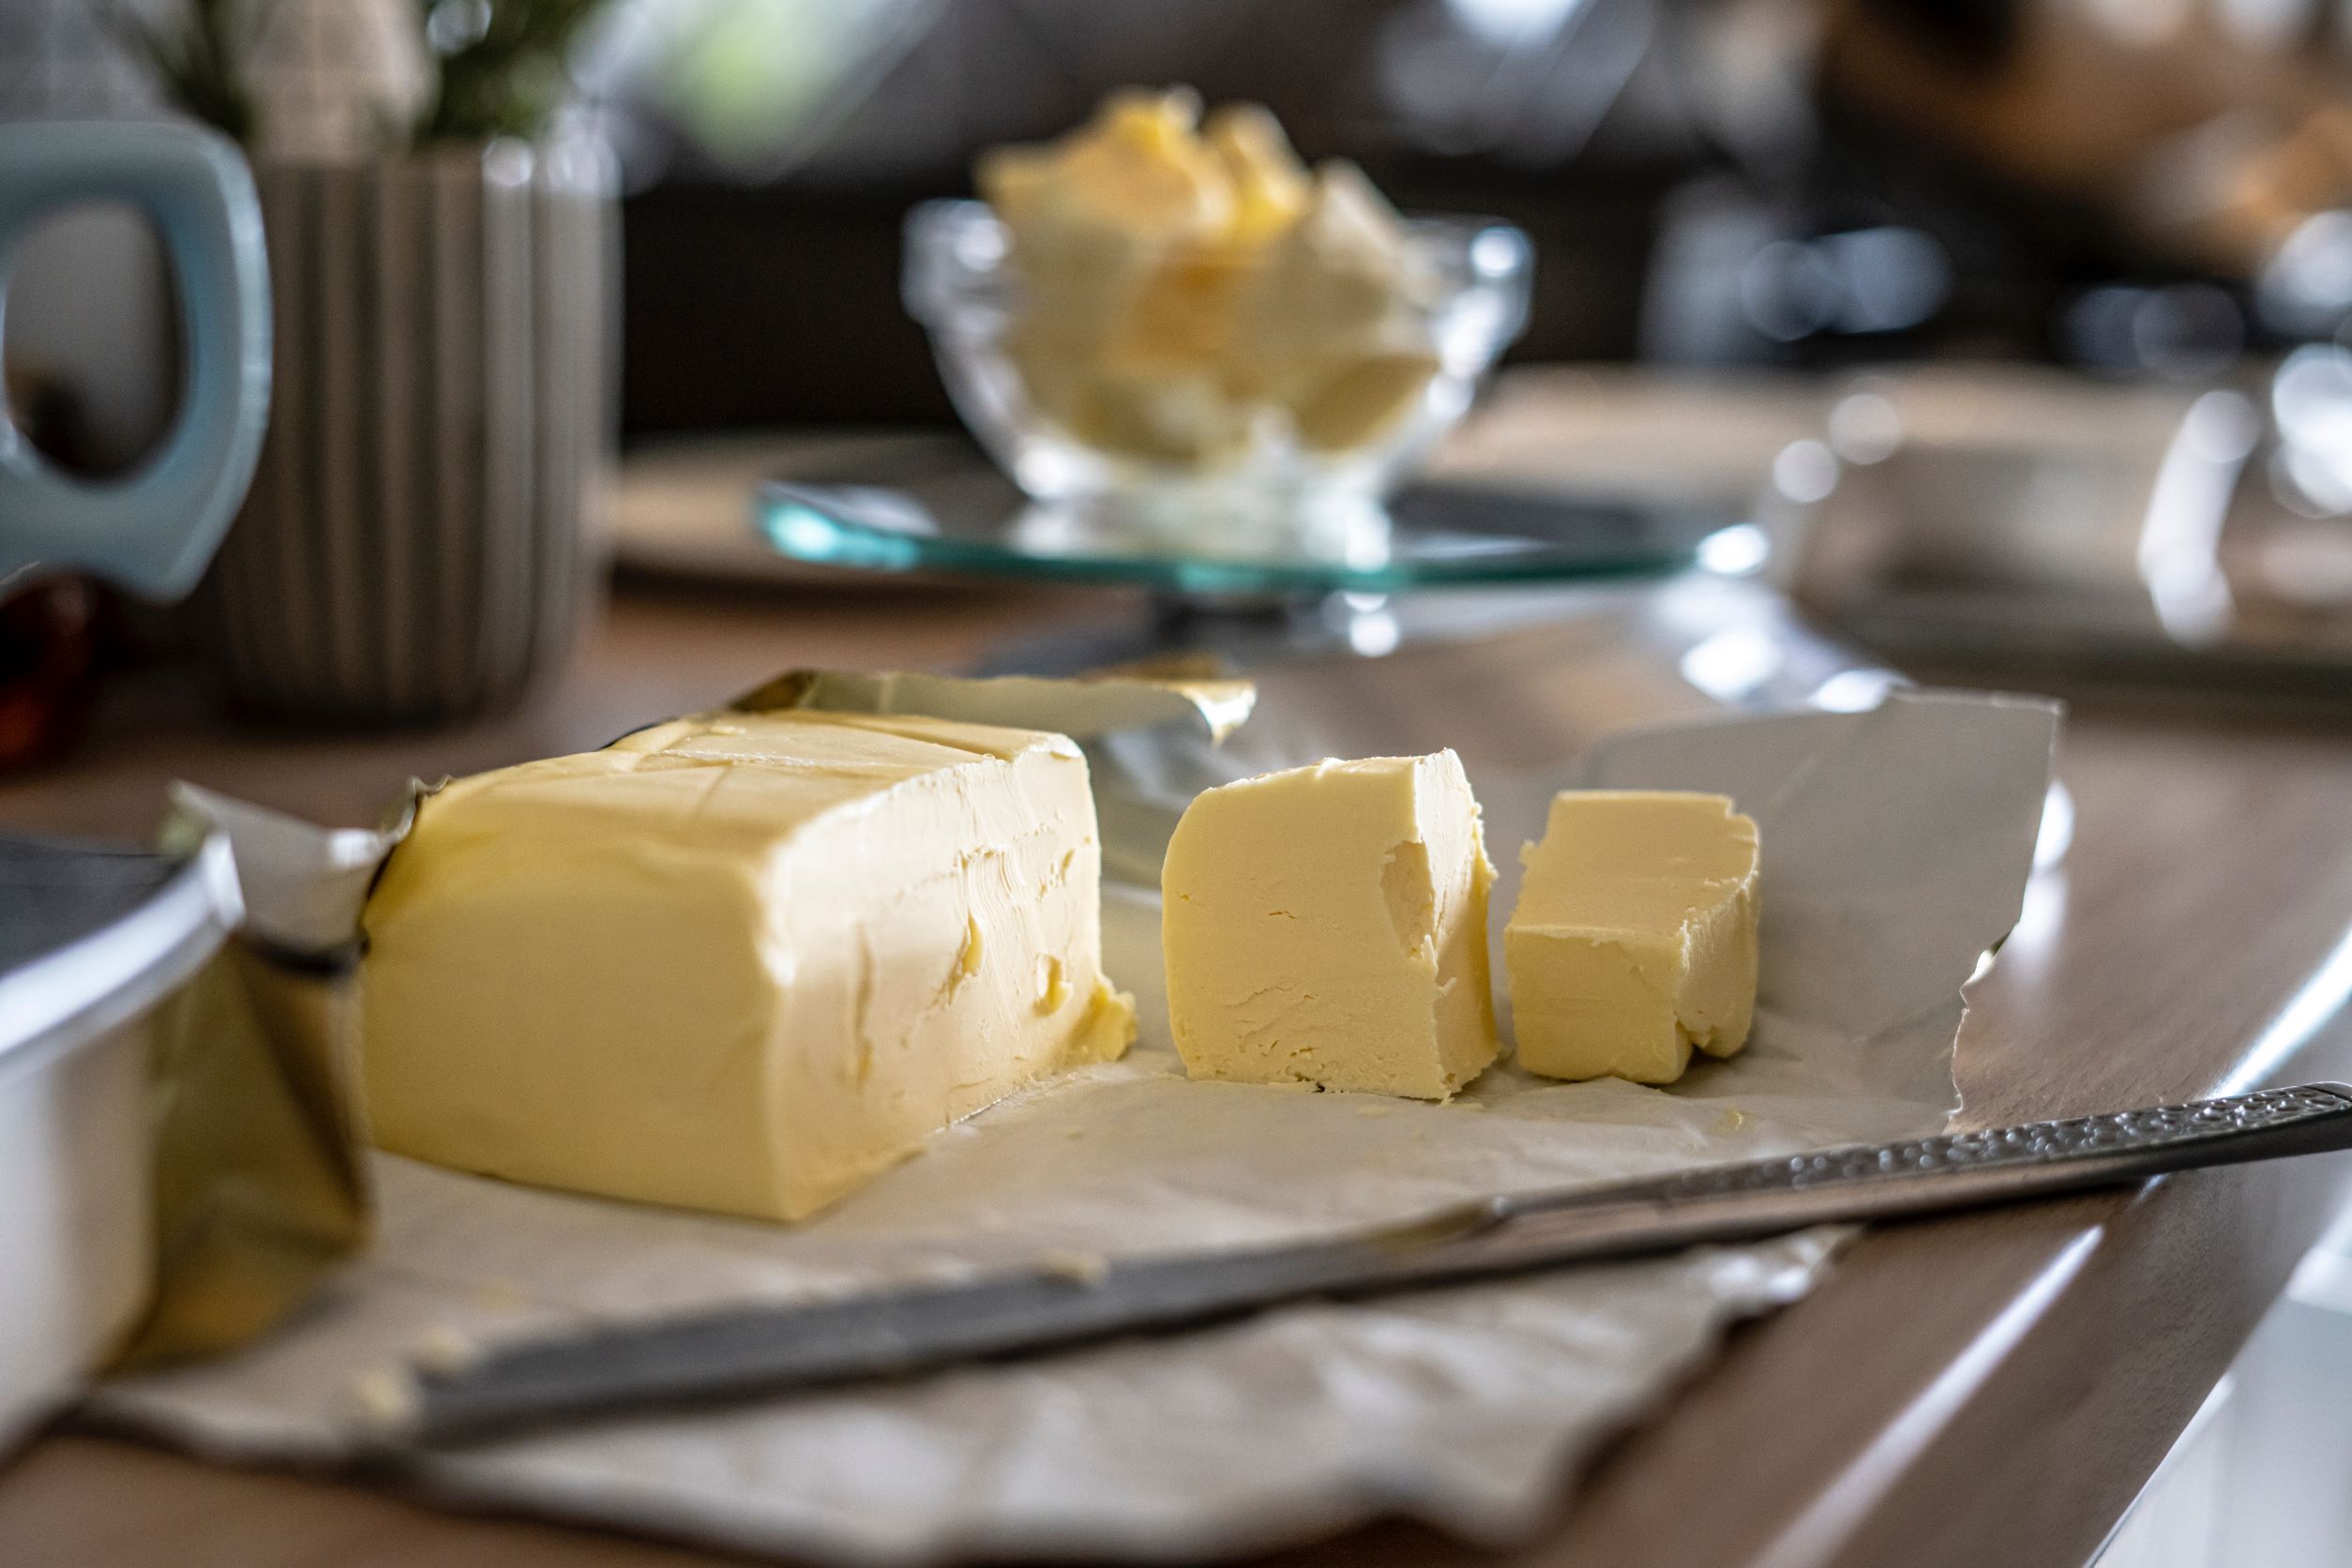 Pilih unsalted butter agar rasa asin tidak mengalahkan aroma bawang putih. (Photo by Sorin Gheorghita on Unsplash)